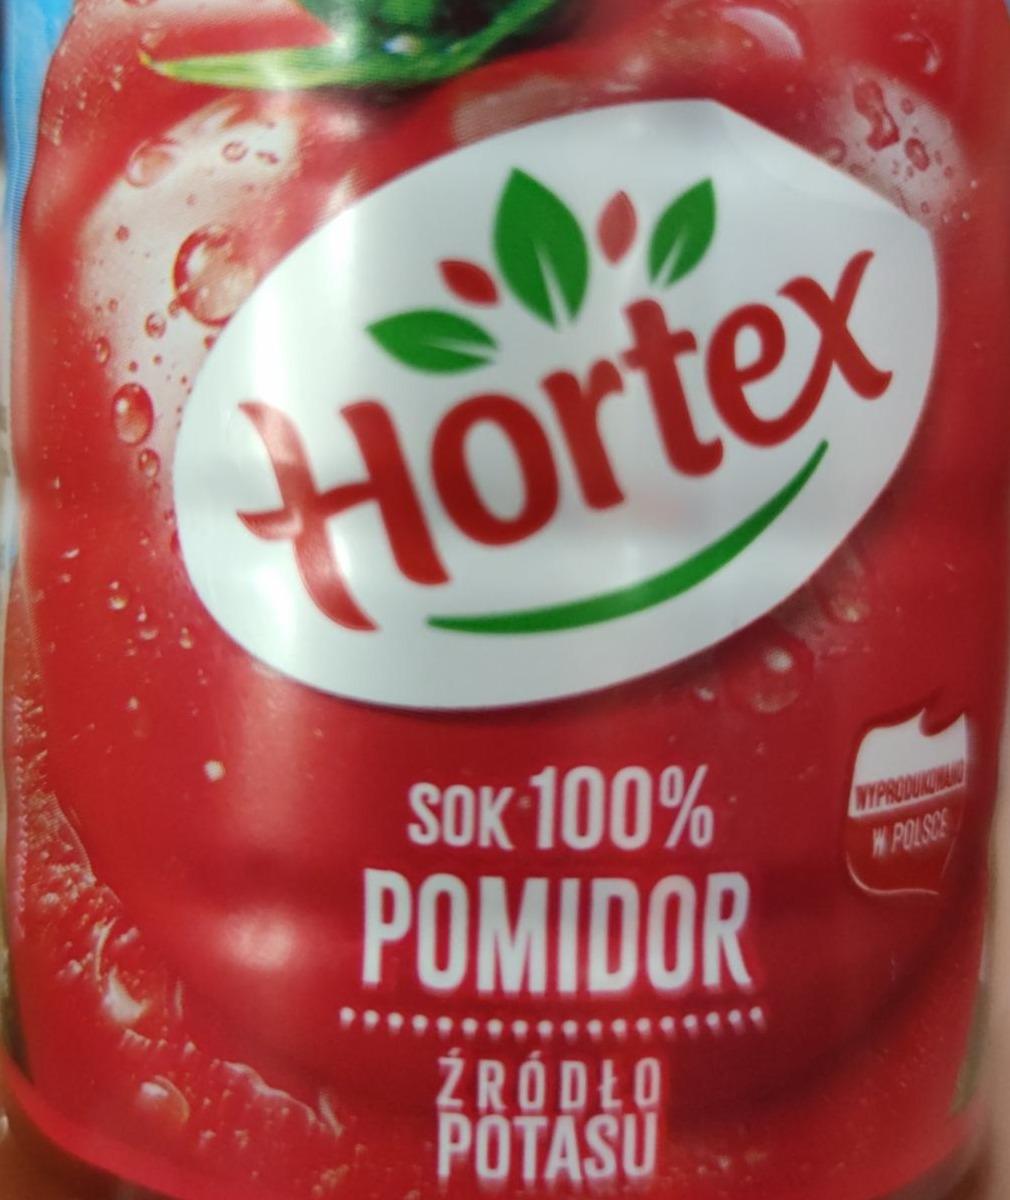 Фото - Сок томатный Hortex